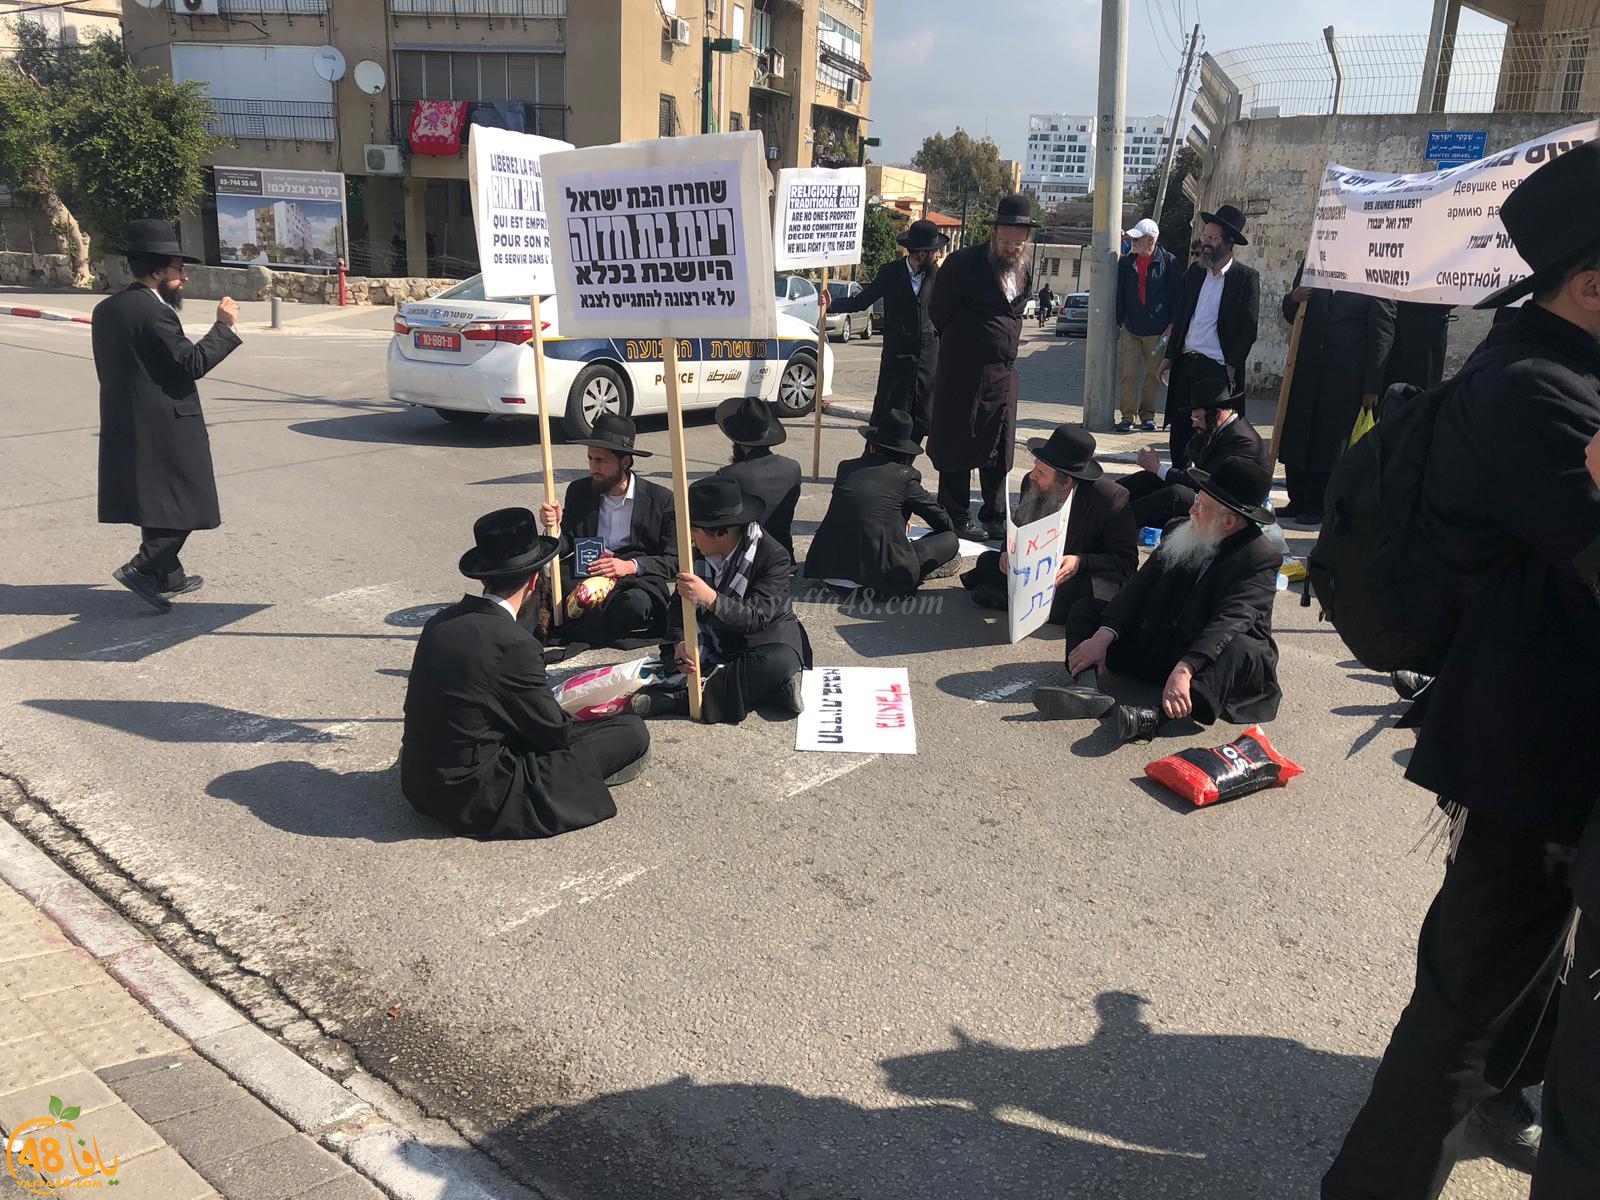 فيديو: اغلاق شارع شيفتي يسرائيل خلال تظاهرة للخارديم في مدينة يافا 